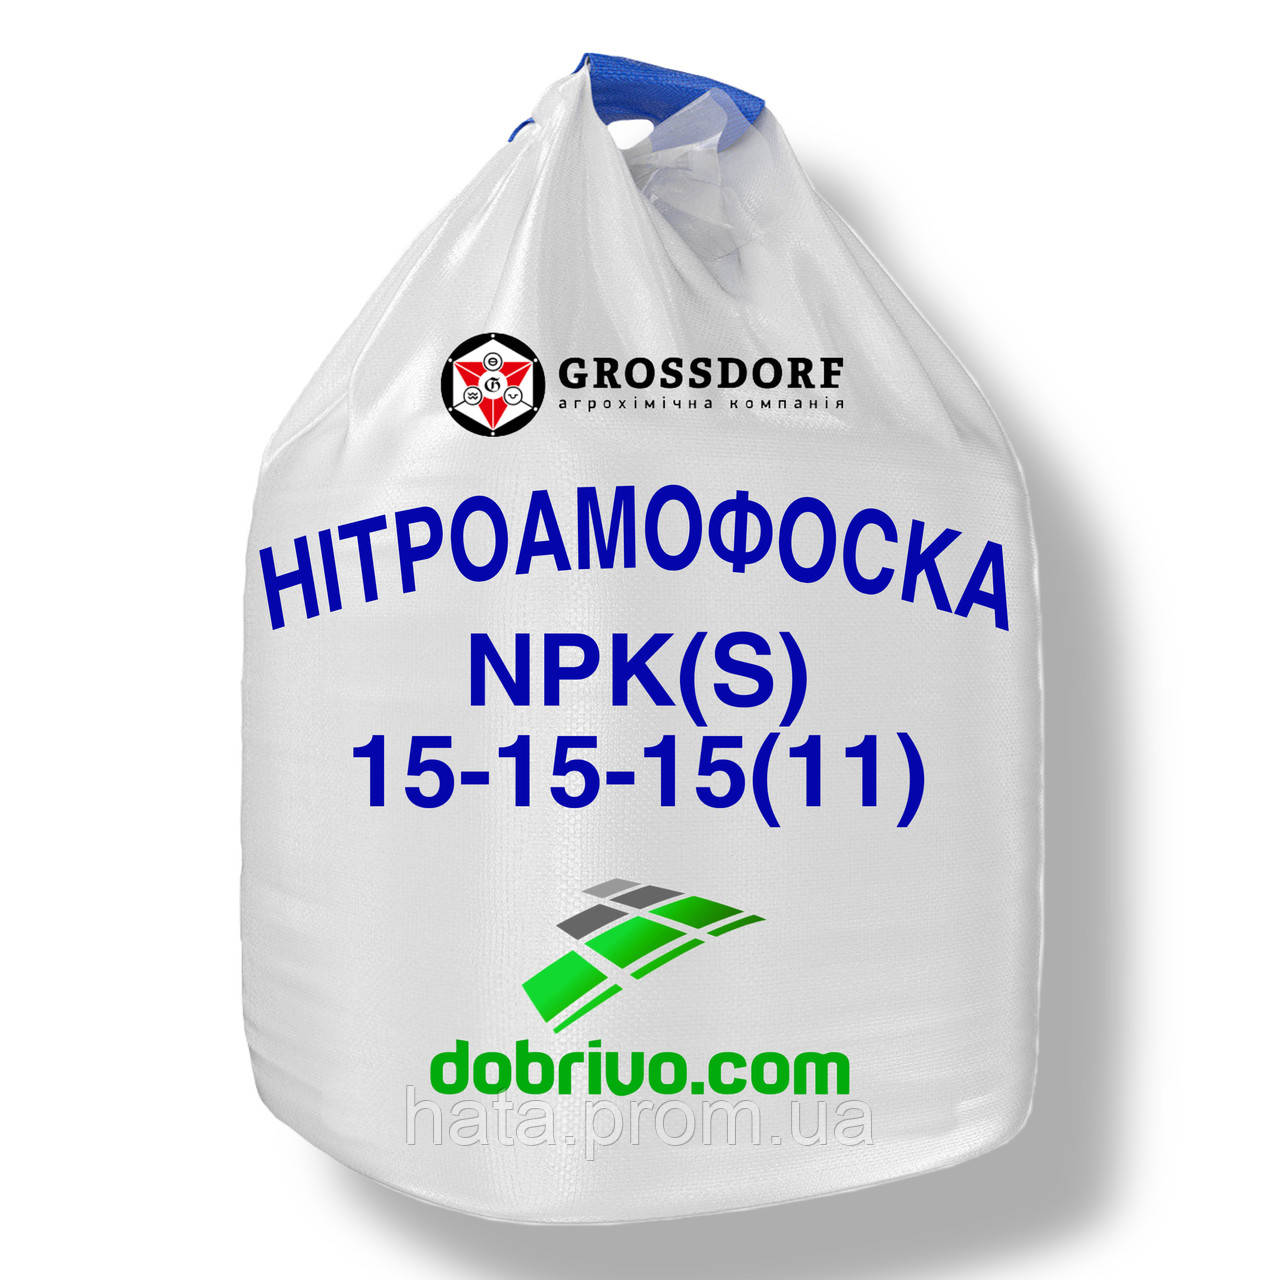 Нітроамофоска NPK(S): 15-15-15(11), мішки по 50 кг / біг-бег, комплексне мінеральне добриво